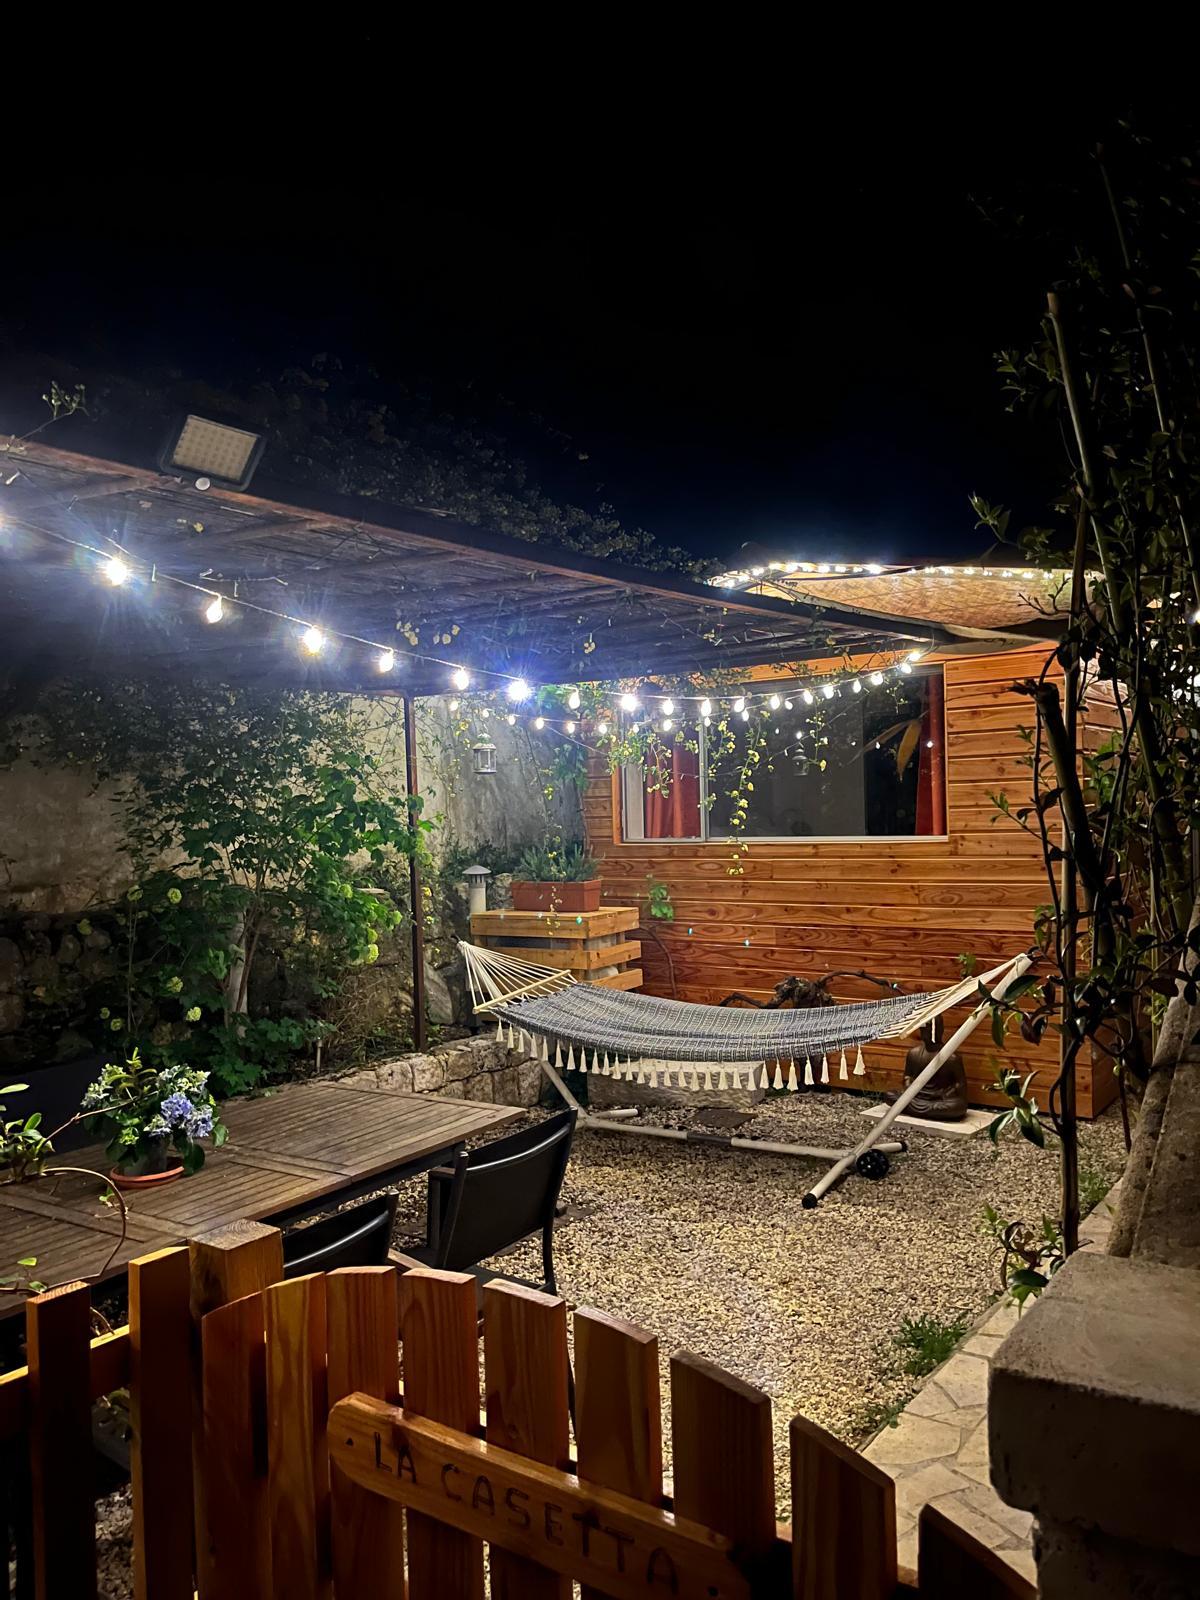 Hôte GreenGo: "La Casetta" Charmand bungalow tout confort - Image 8